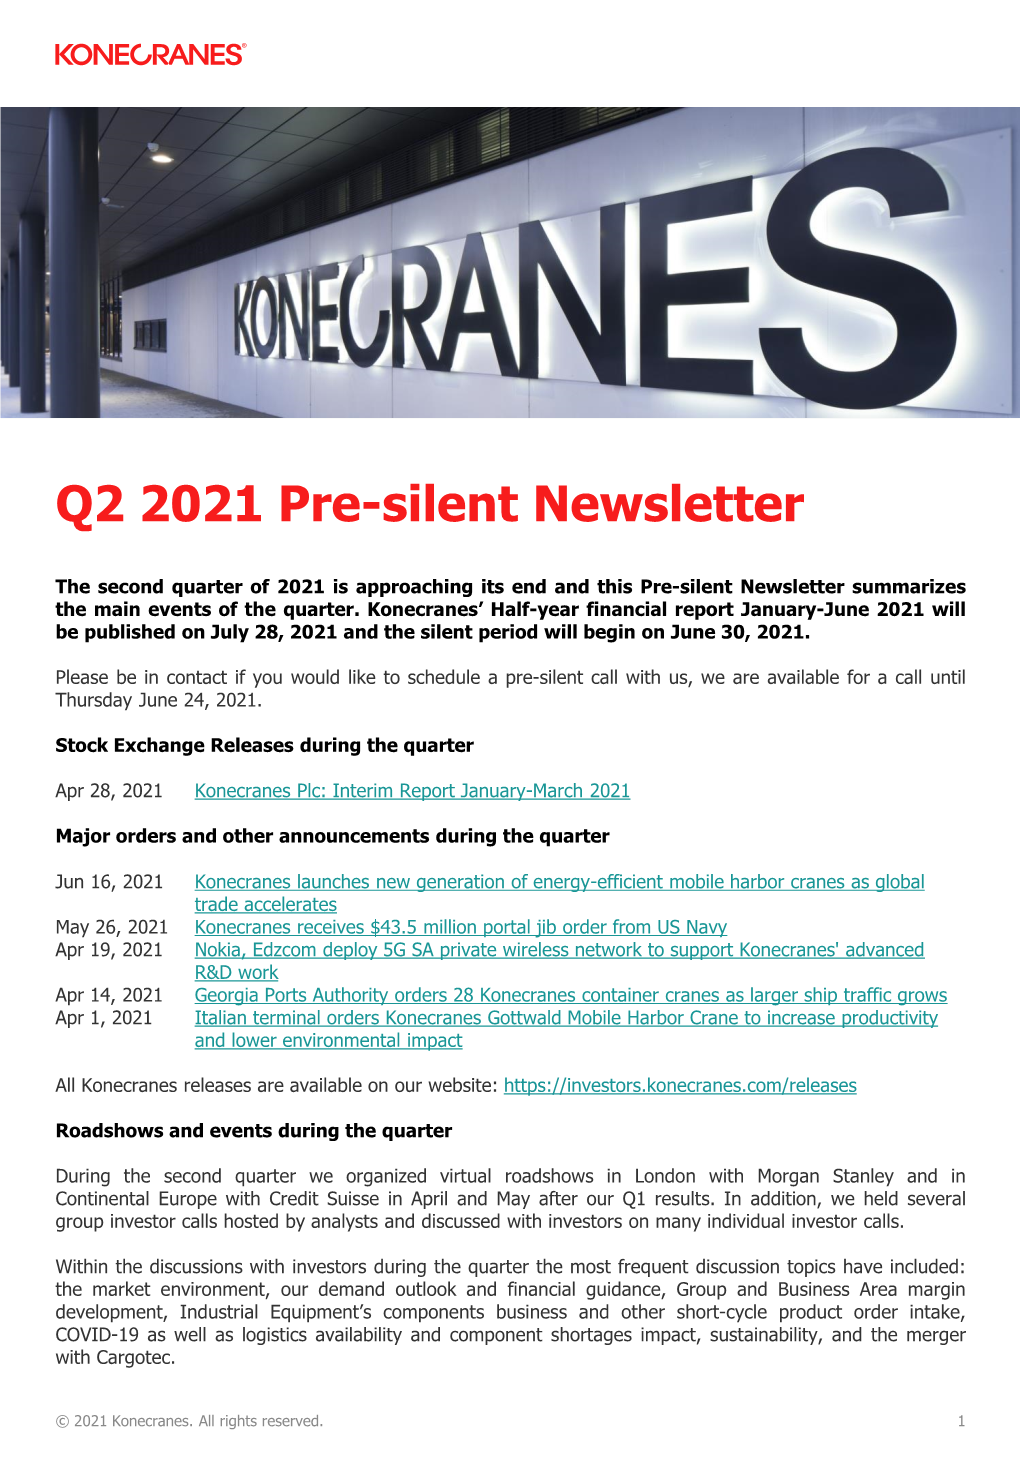 Q2 2021 Pre-Silent Newsletter